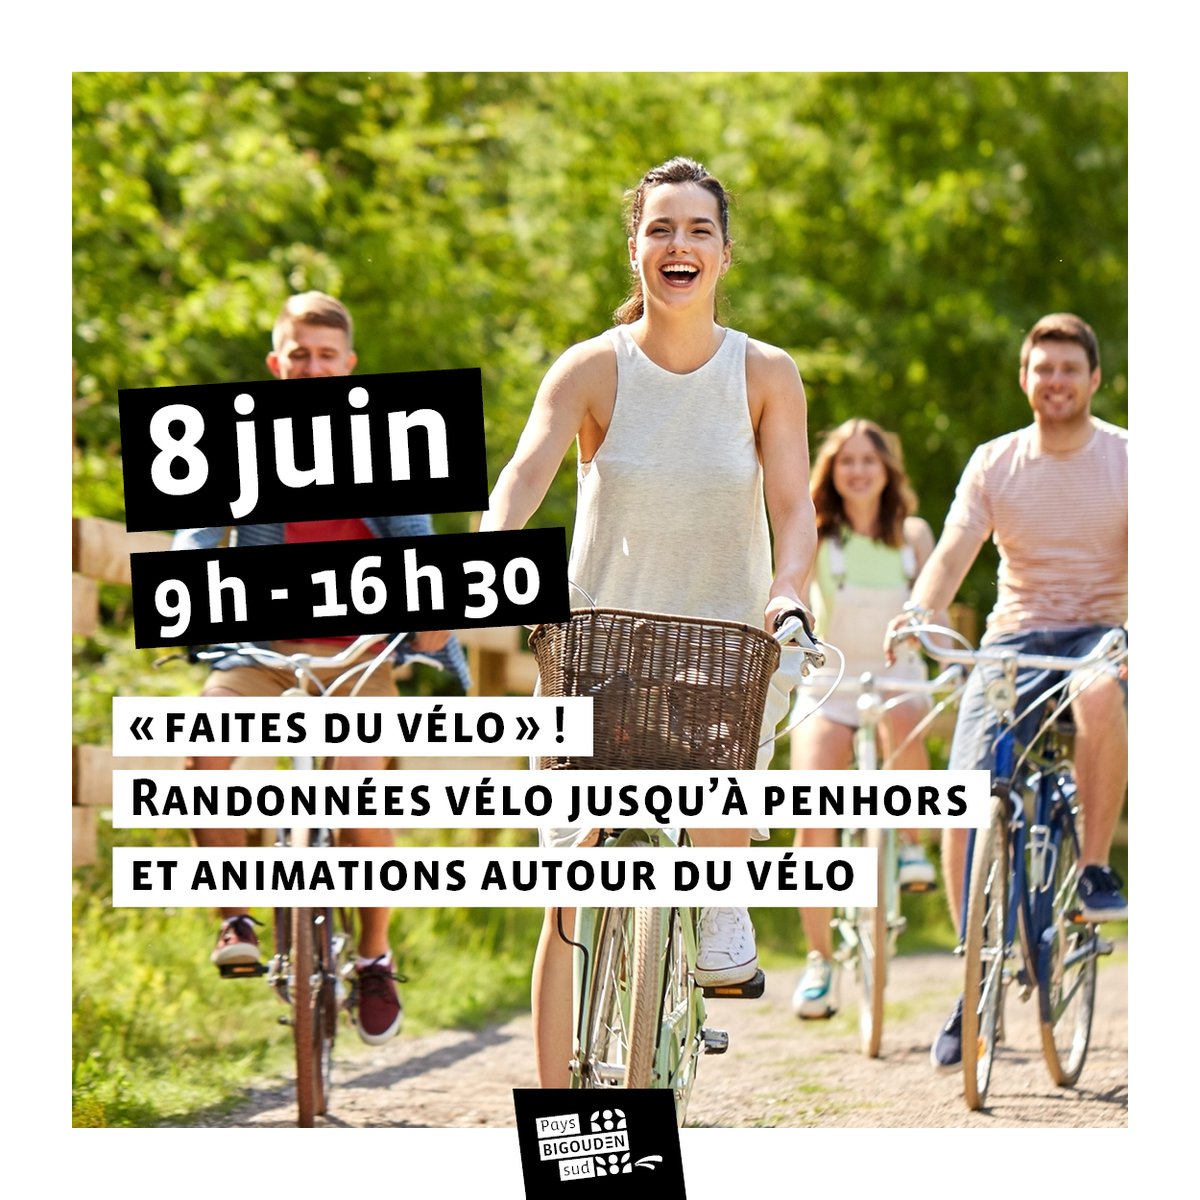 Maintenant, vous savez ce que vous ferez le 8 juin ! Du vélo ;) Avec le Sioca et les communautés de communes de l'Ouest Cornouaille, nous organisons la 'faites' du vélo Tout savoir sur l'événement vélo de l'année : sioca.fr/mai-a-velo/